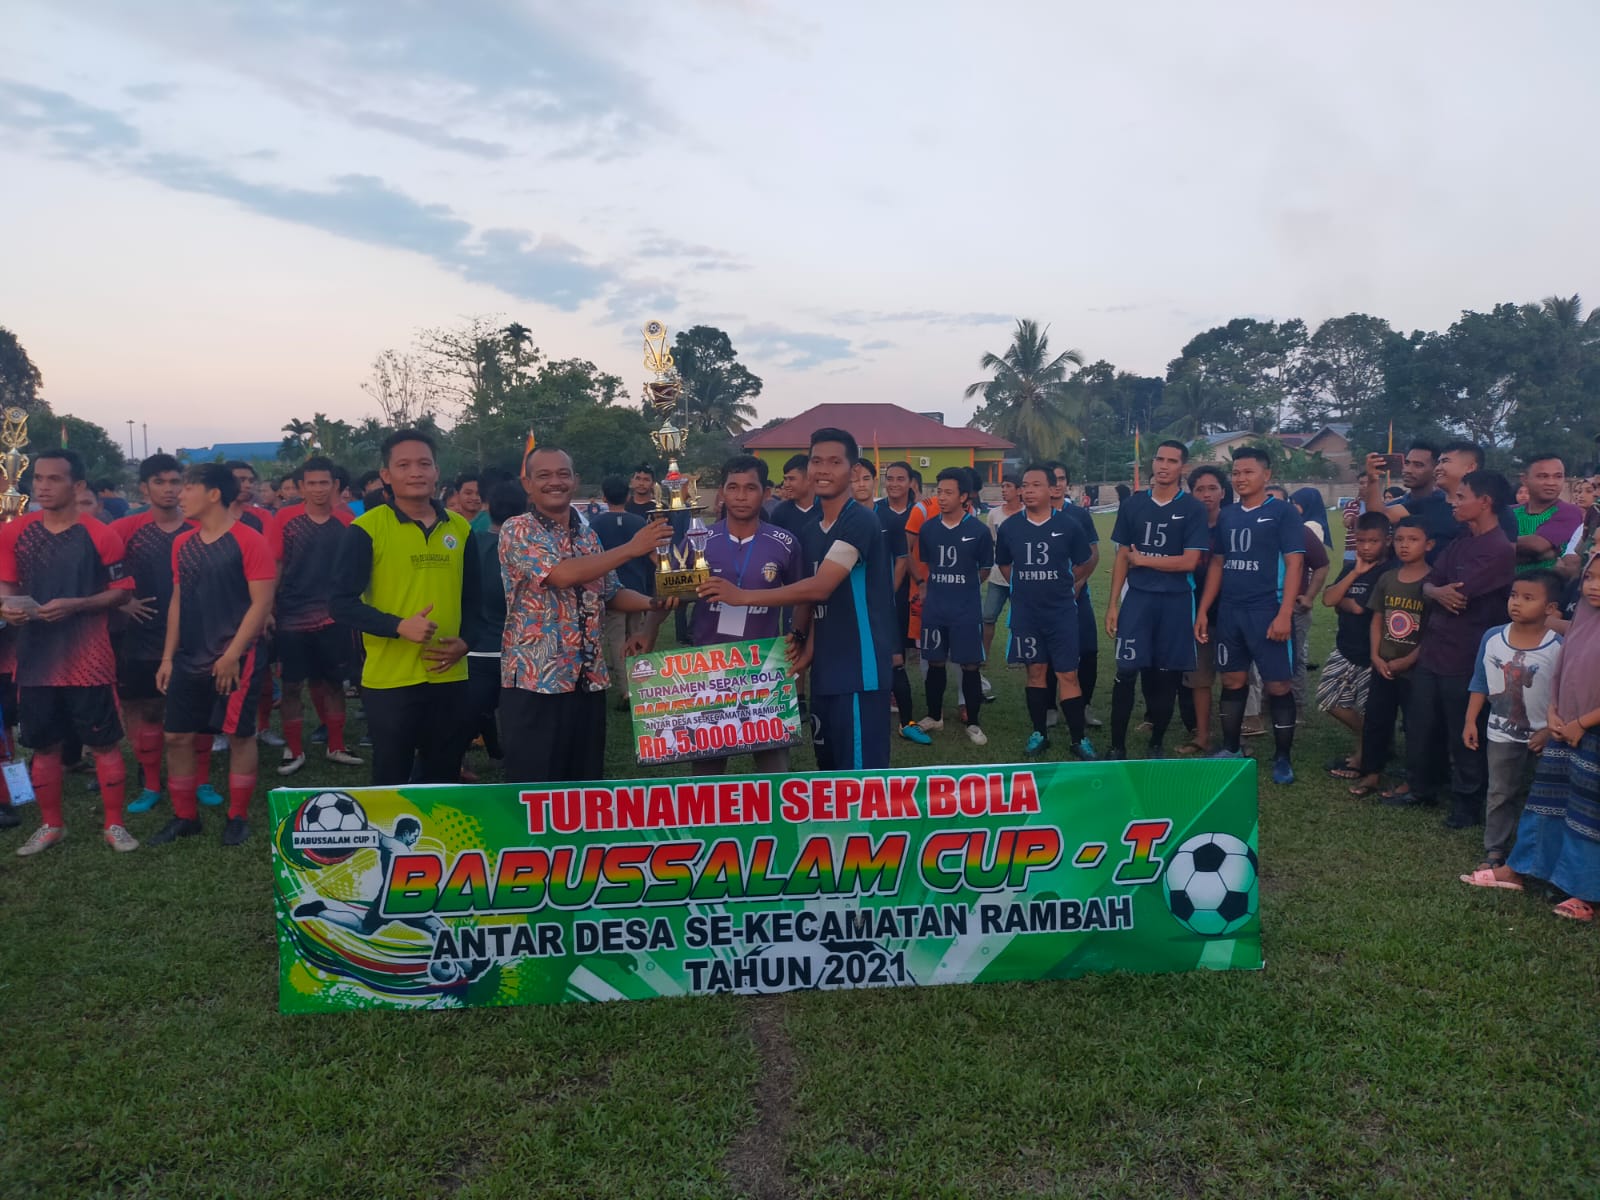 Penutupan Turnamen Babussalam Cup 1 Antar Desa Se Rambah, Desa Tanjung Belit FC Keluar Sebagai Juara Pertama